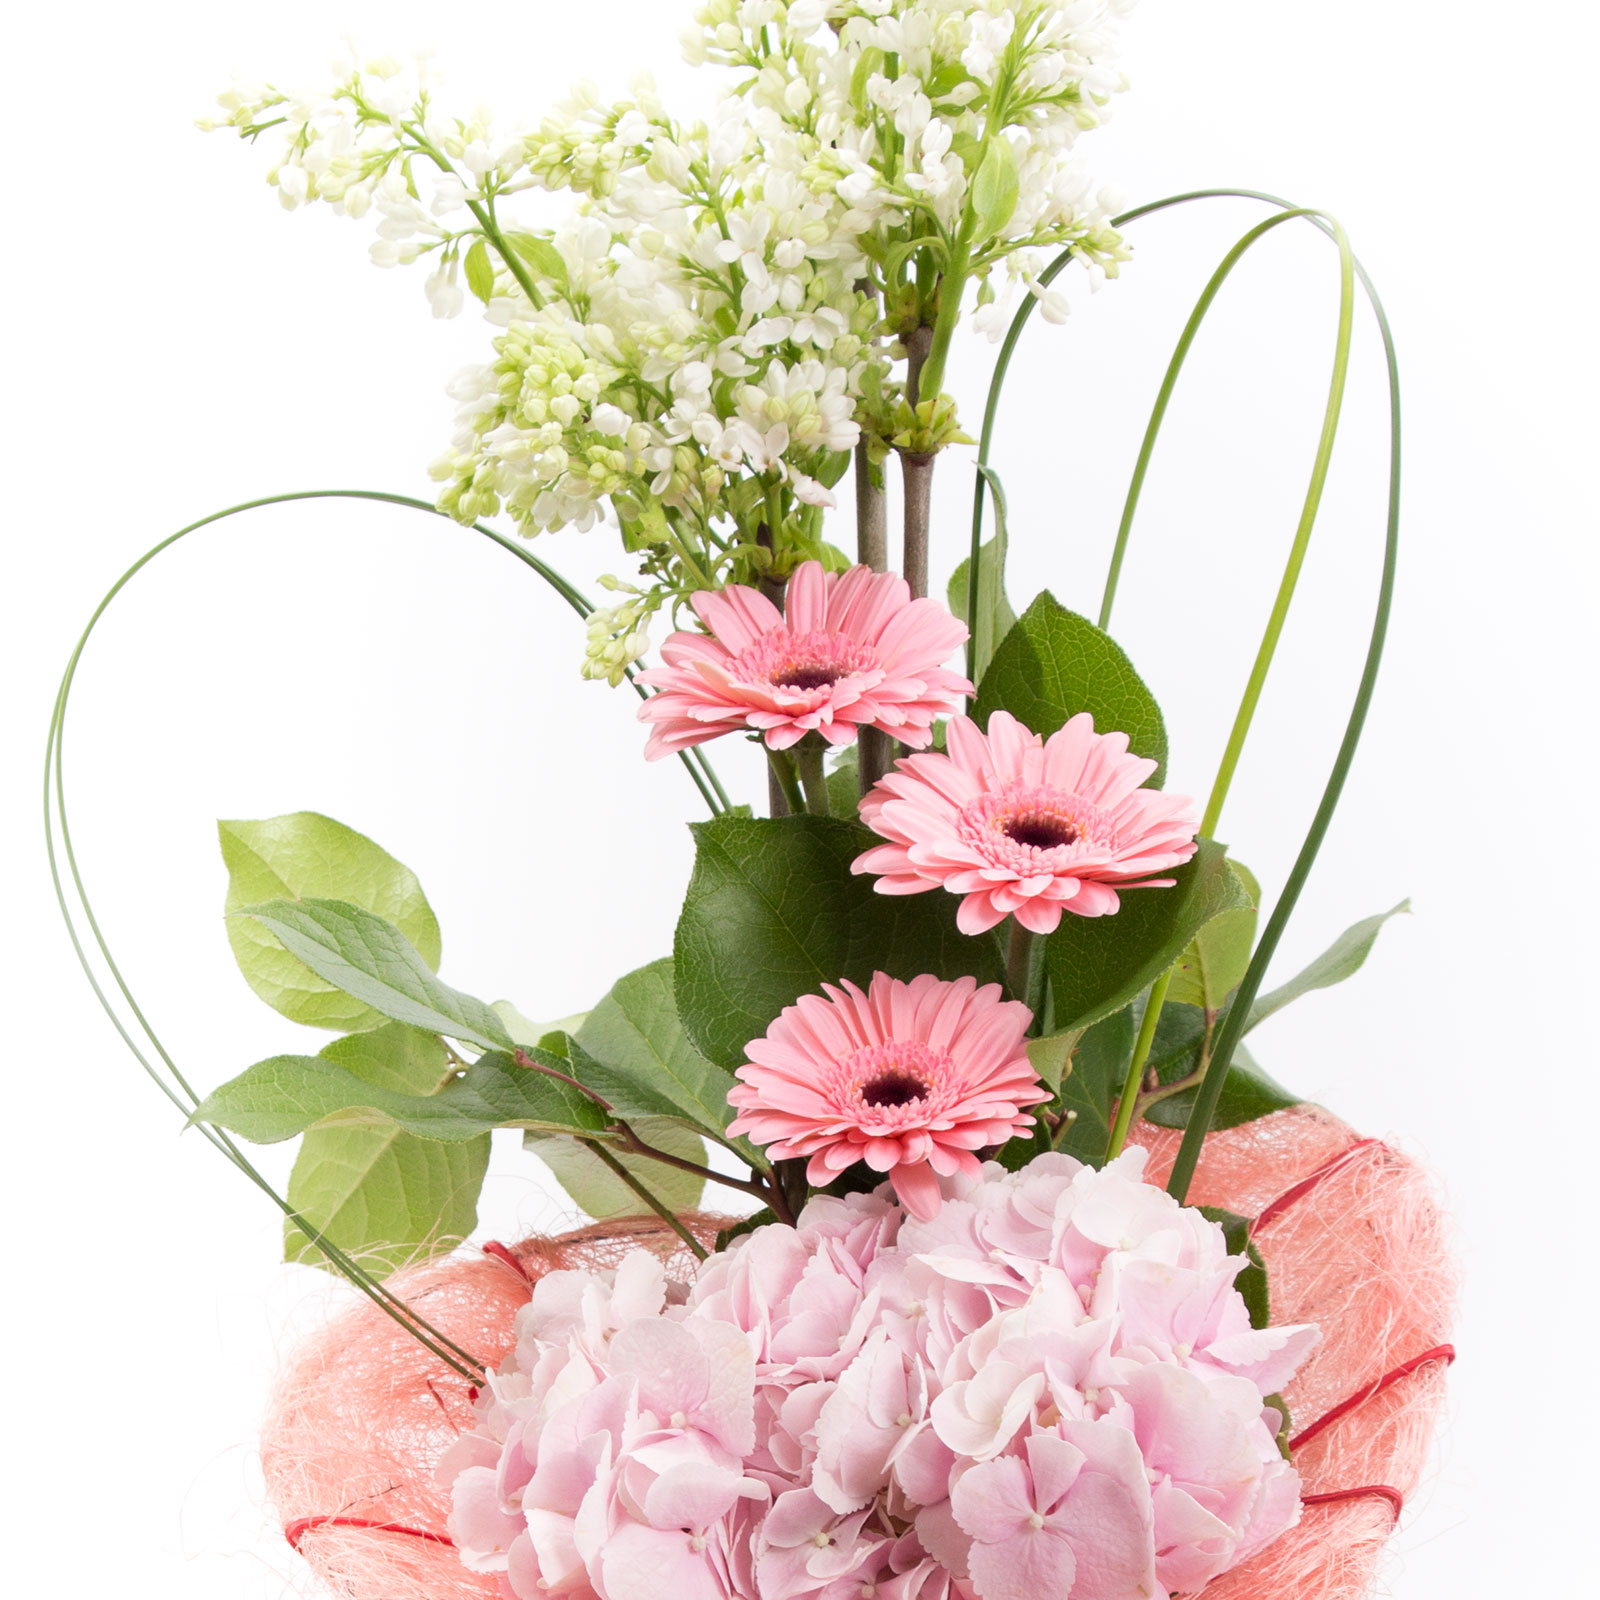 Aranjament floral romantic si elegant